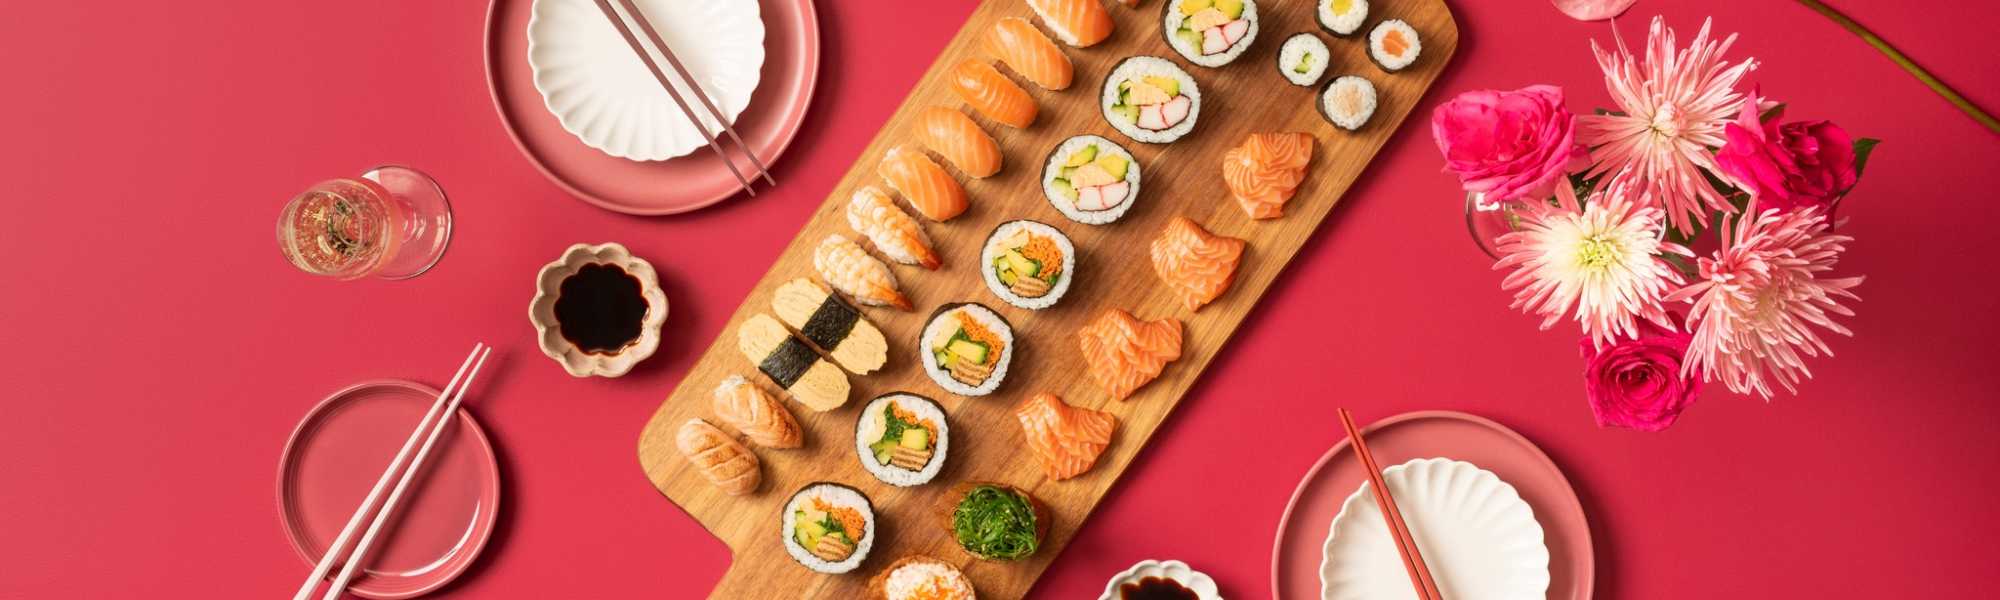 Sushi Sushi Rockingham